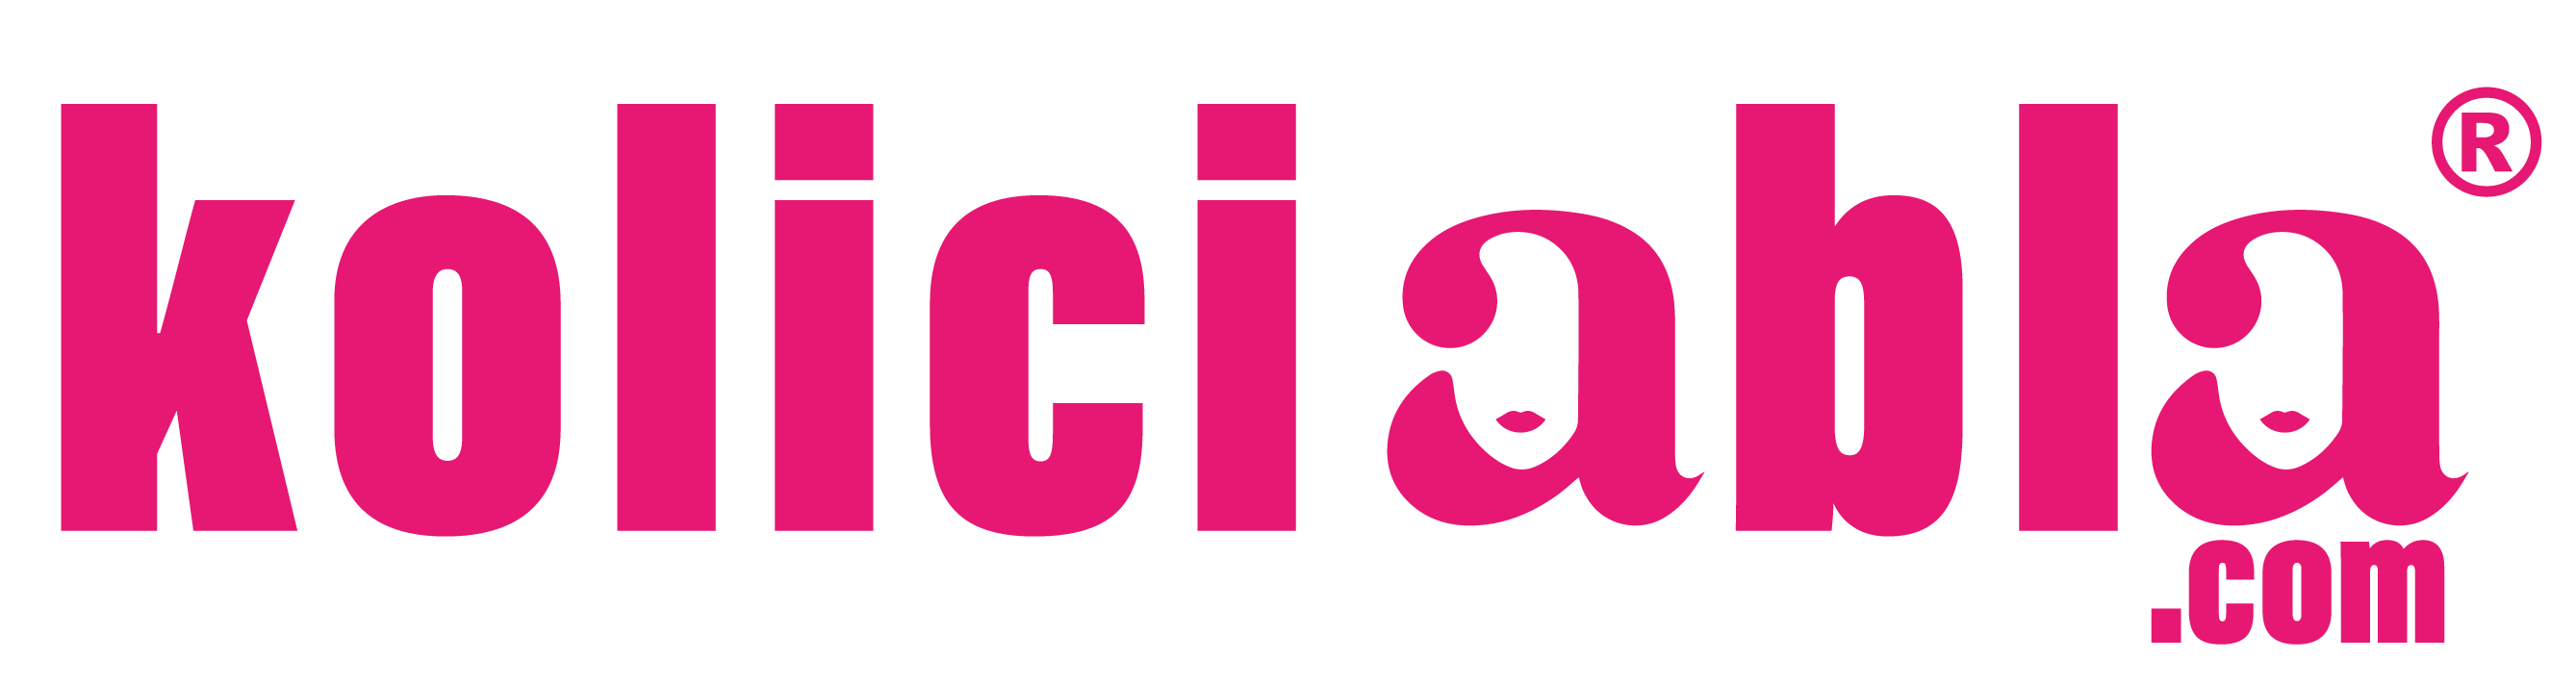 koliciabla-logo.png (79 KB)